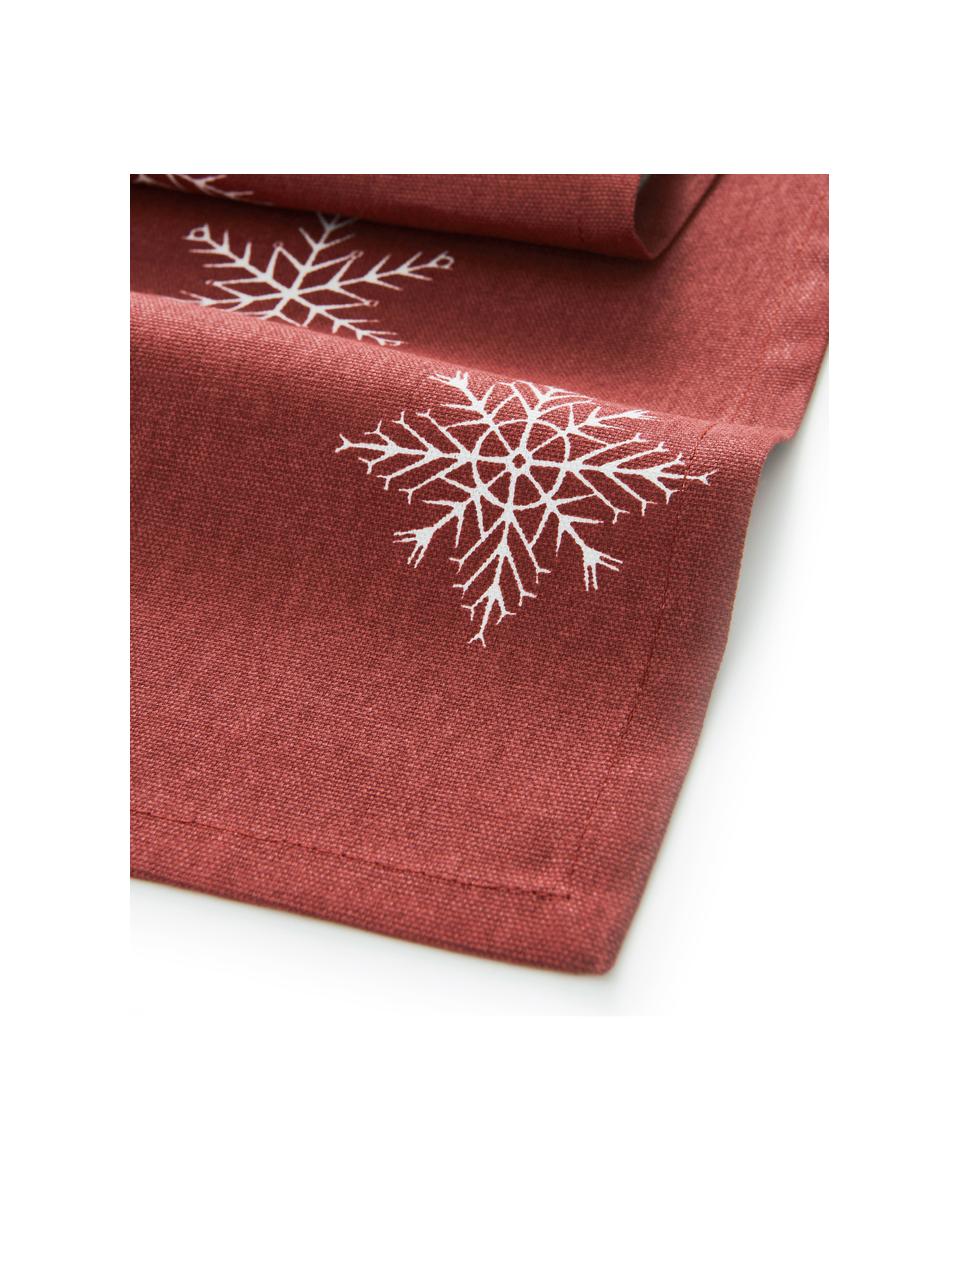 Bieżnik Snow, 100% bawełna pochodząca ze zrównoważonych upraw, Czerwony, biały, S 40 x D 140 cm